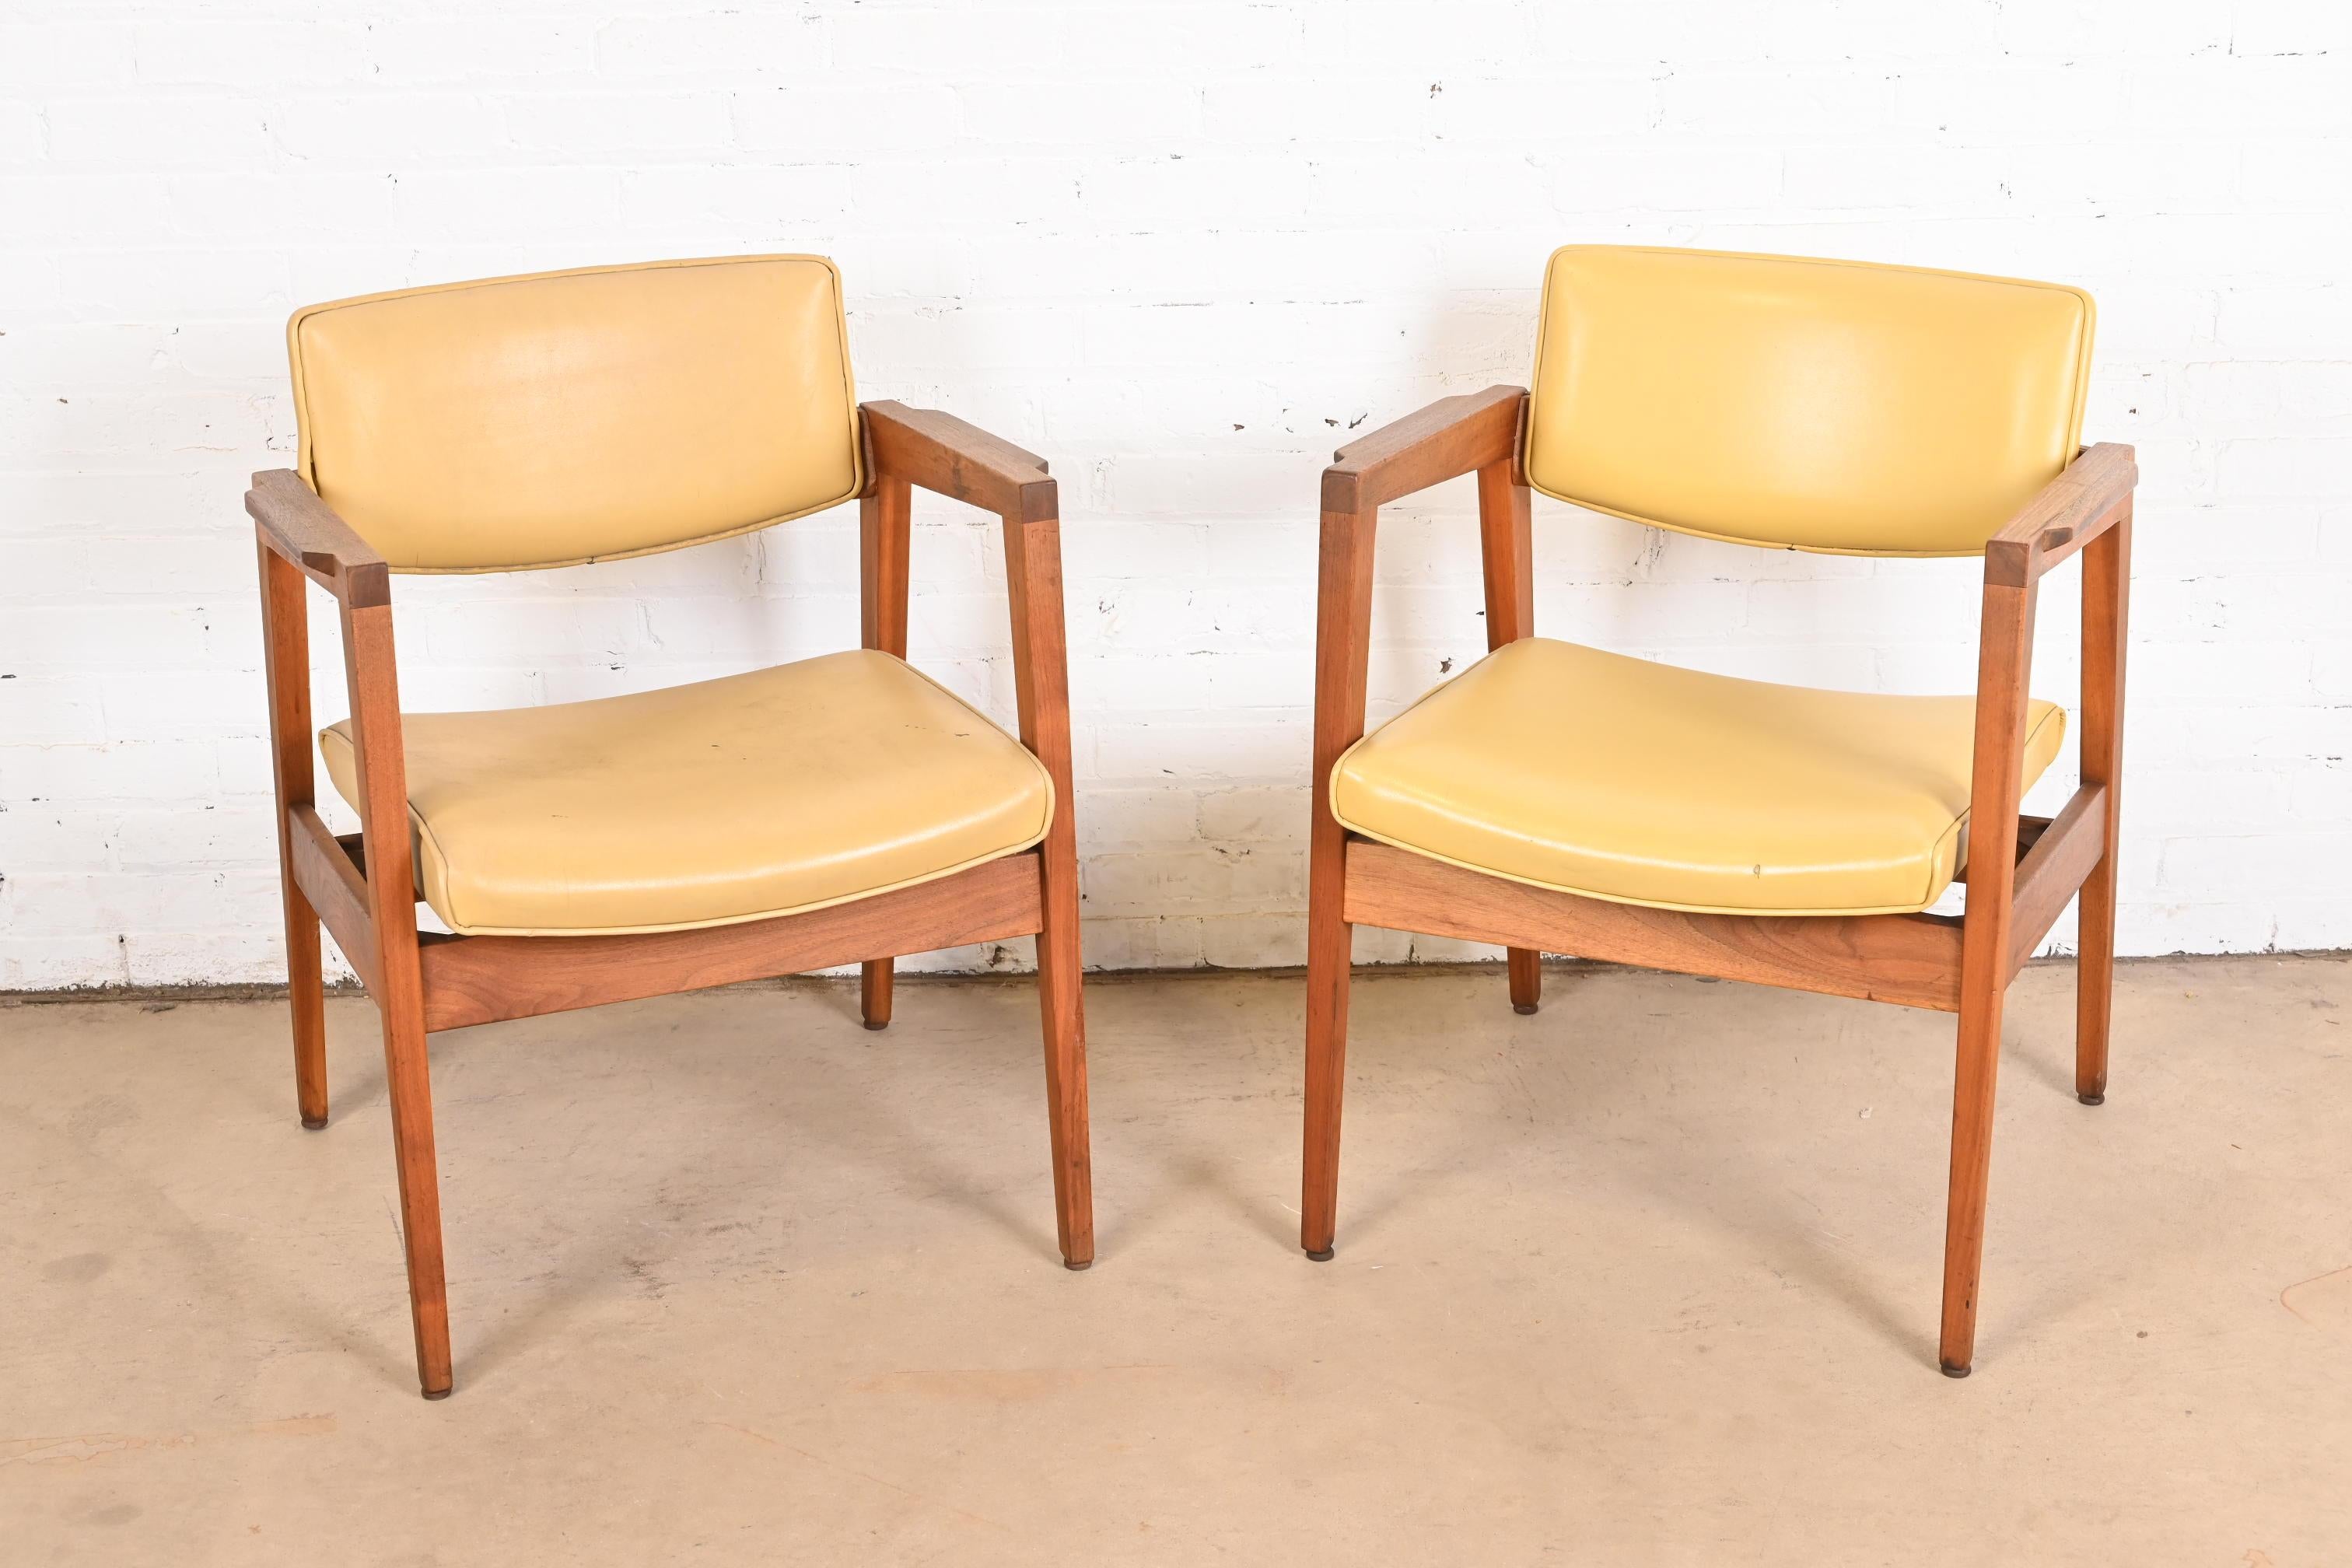 Ein elegantes und stilvolles Paar Mid-Century Modern Club Chairs oder Lounge Chairs

Nach dem Vorbild von Jens Risom

Von Gunlocke

USA, 1960er Jahre

Gestell aus massivem Nussbaumholz, mit originaler gelber Vinyl-Polsterung.

Maße: 23,75 